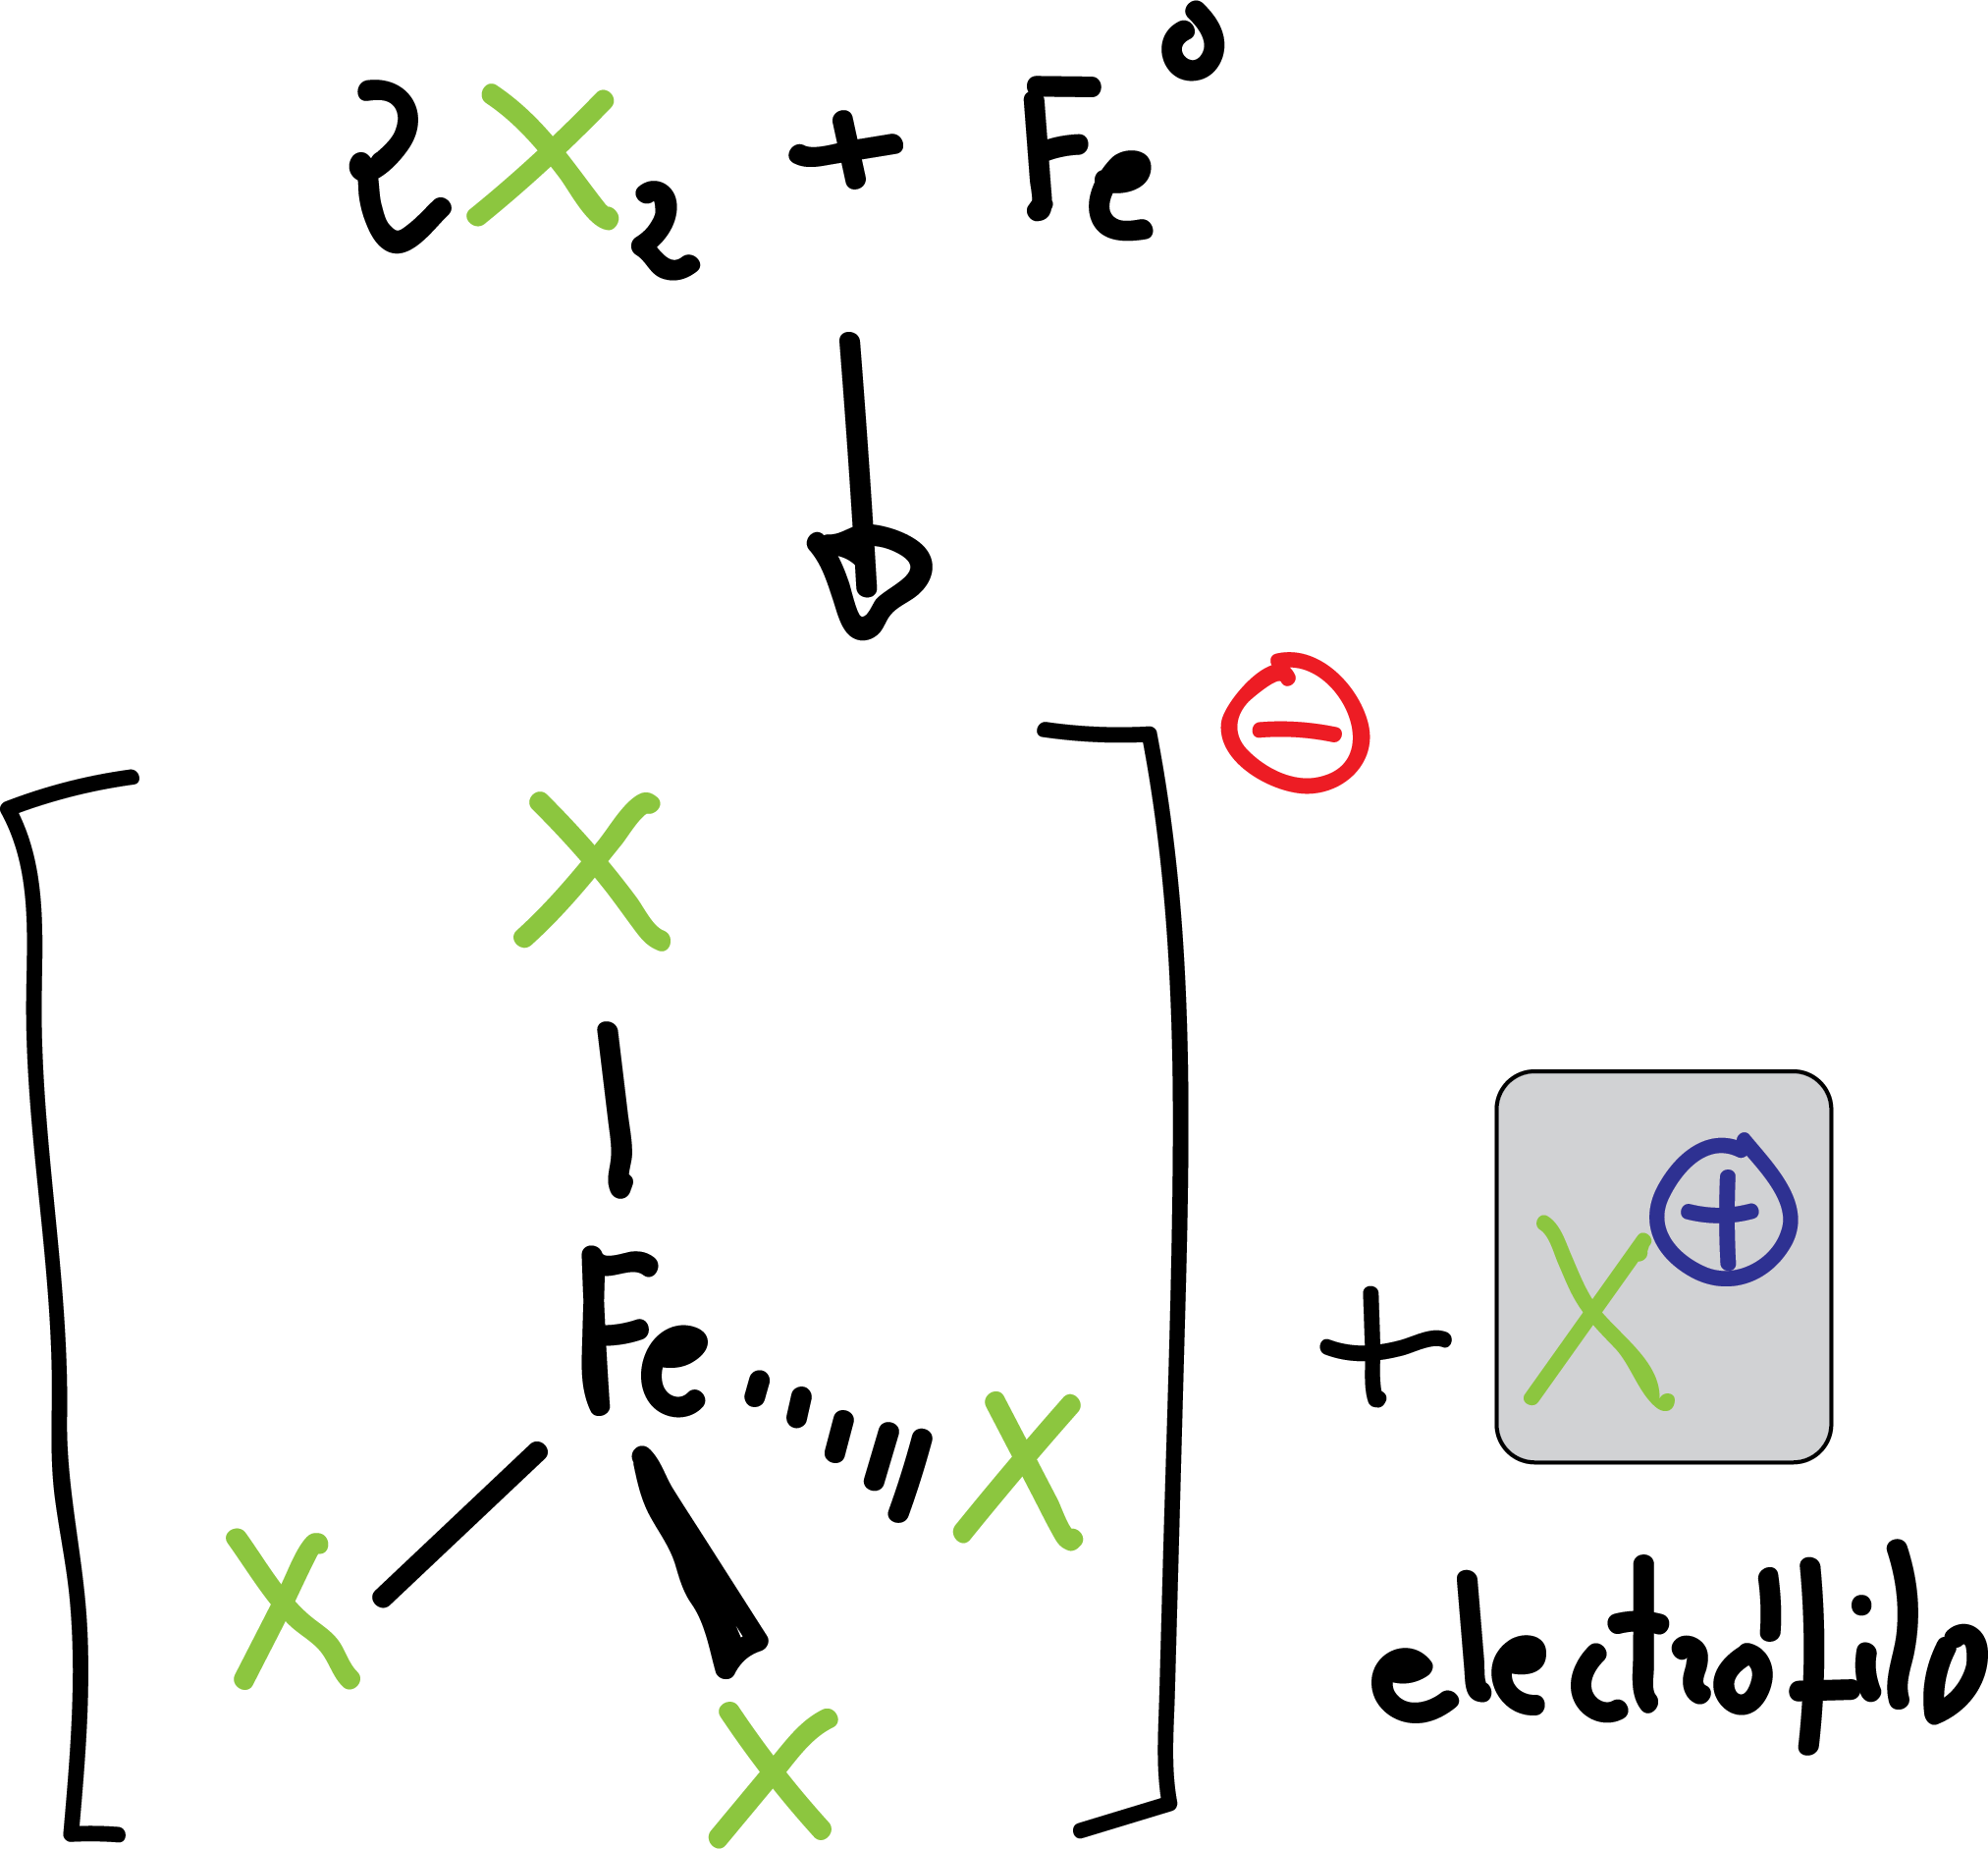 generacion de electrofilo en la reaccion de halogenacion de benceno